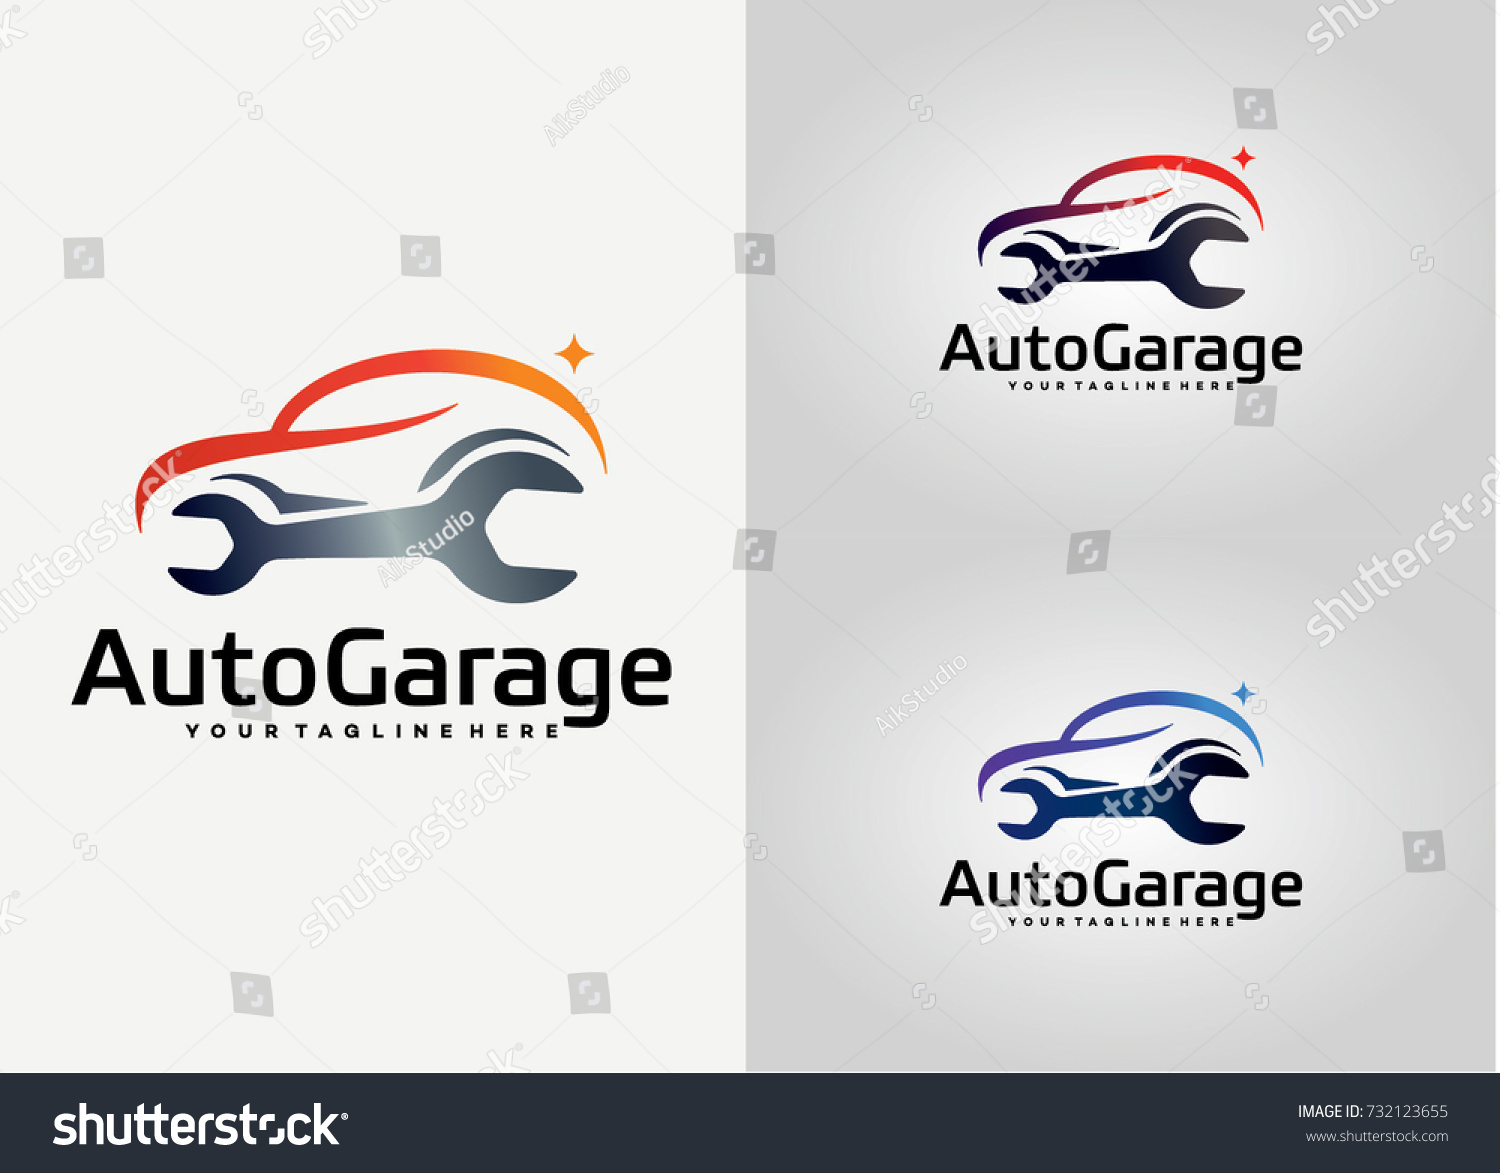 Auto Garage Logo Template Design Creative Stock Vector Royalty